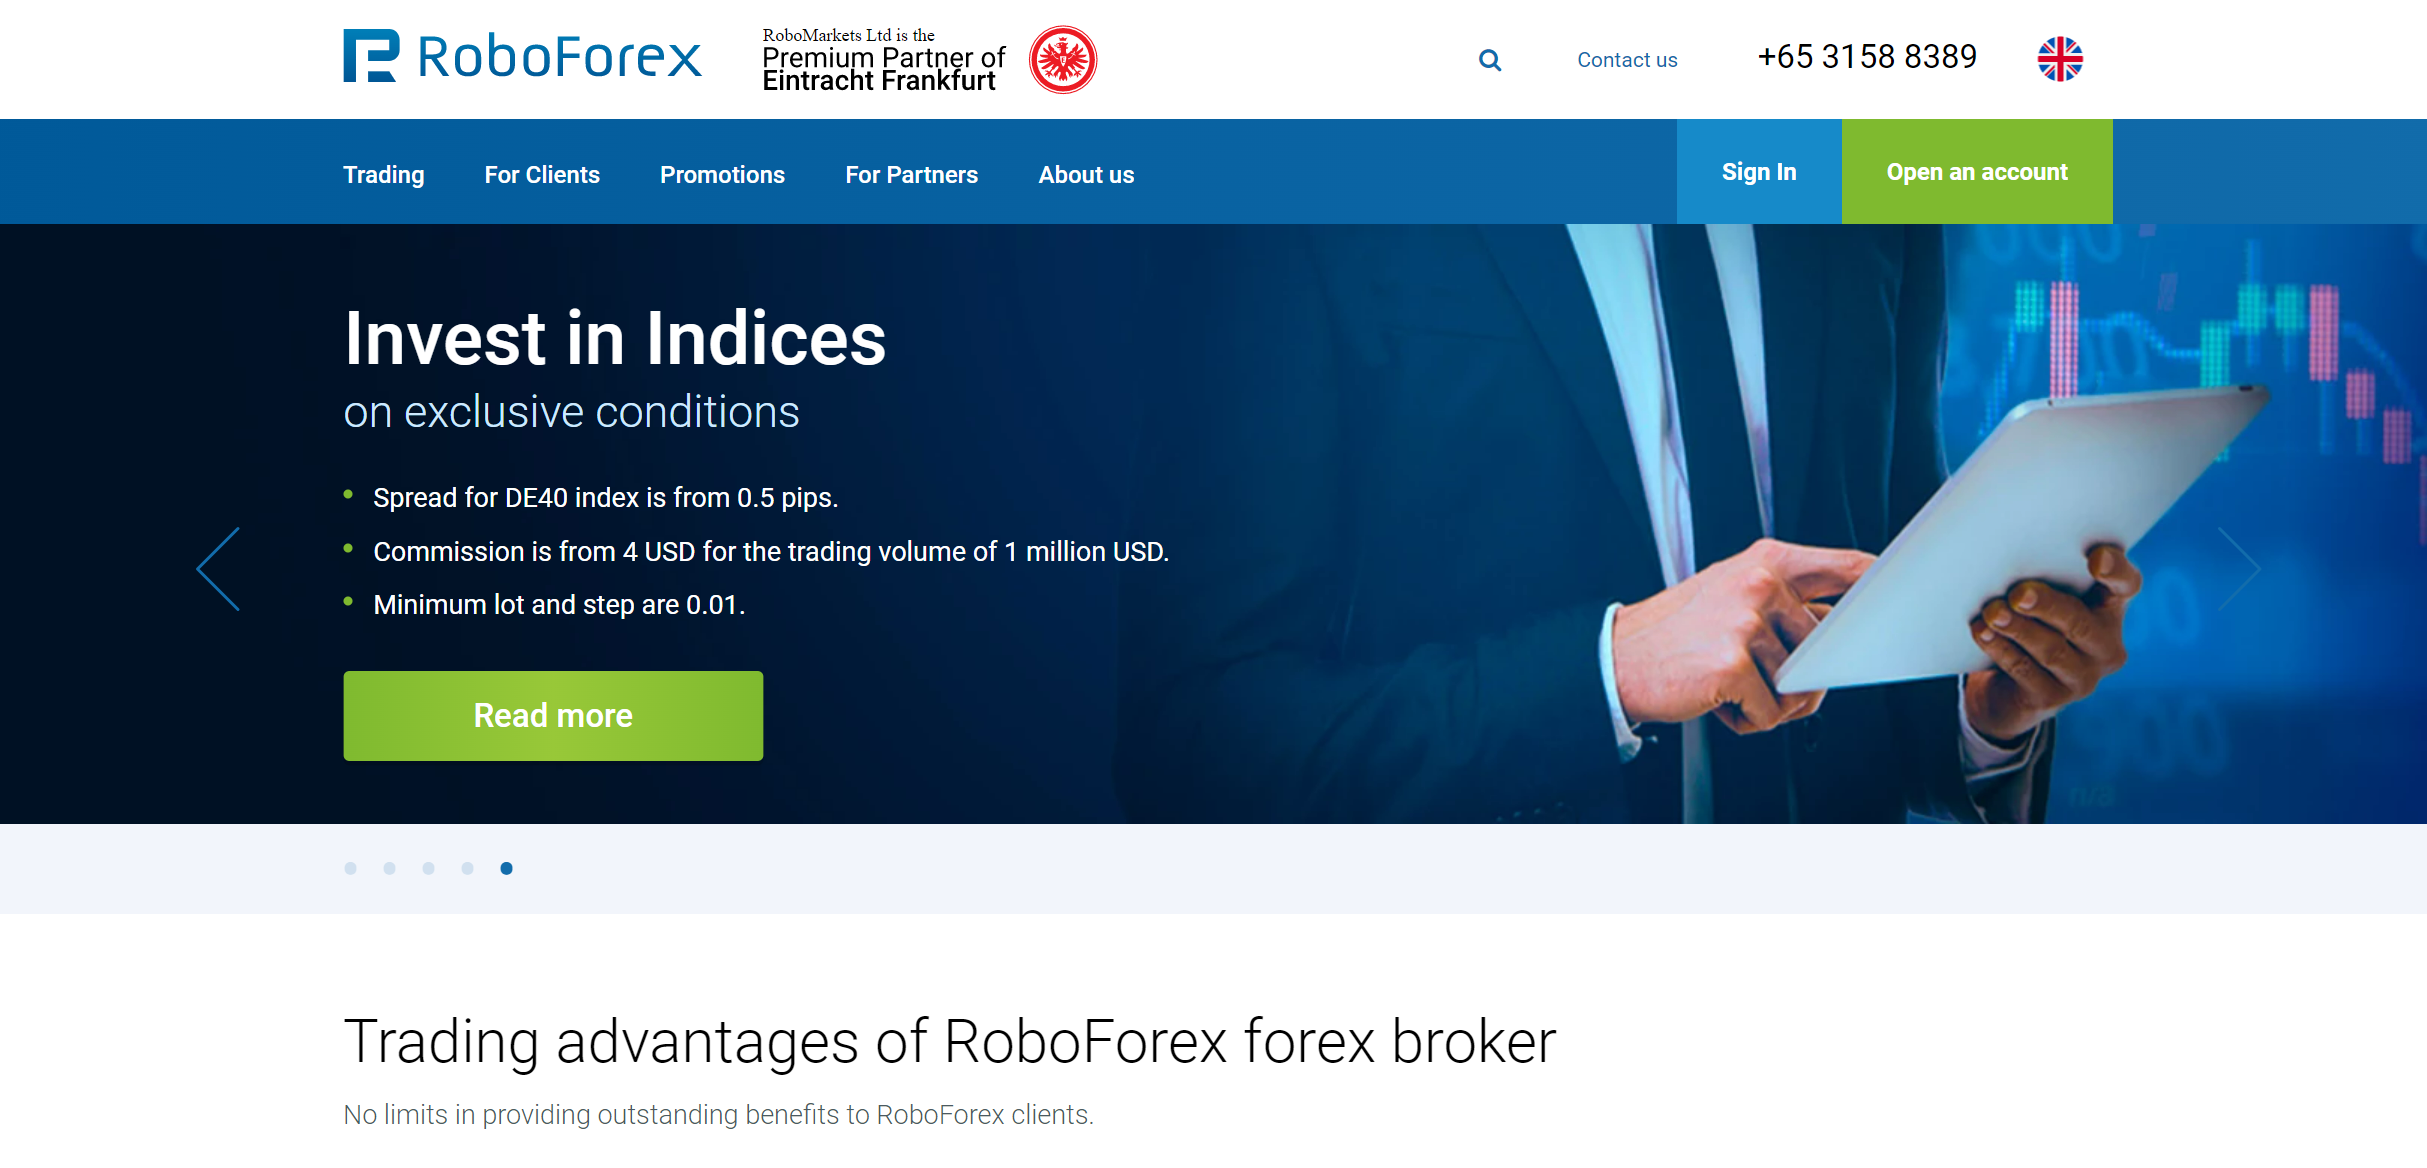 A RoboForex forex brókerrel való kereskedés előnyei